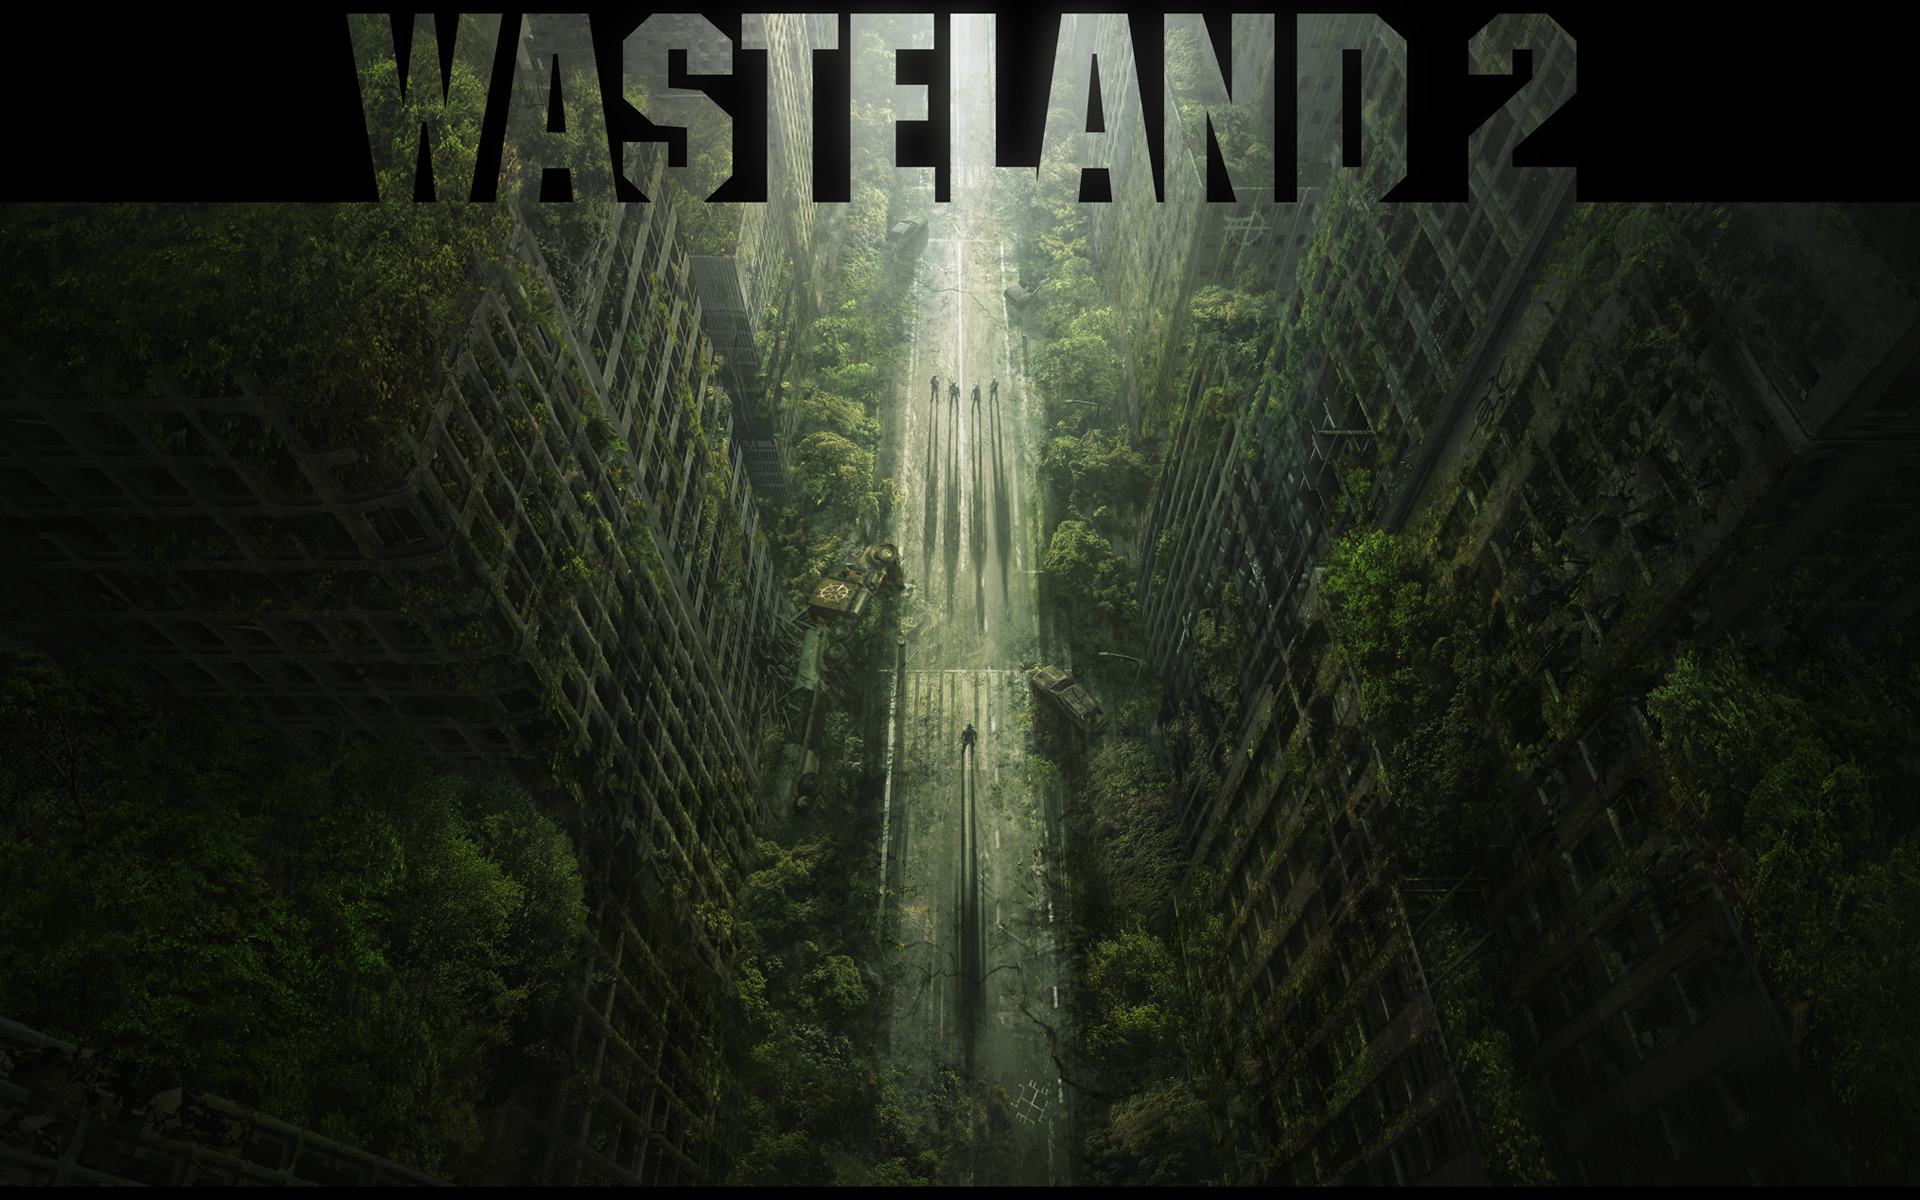 wasteland 2